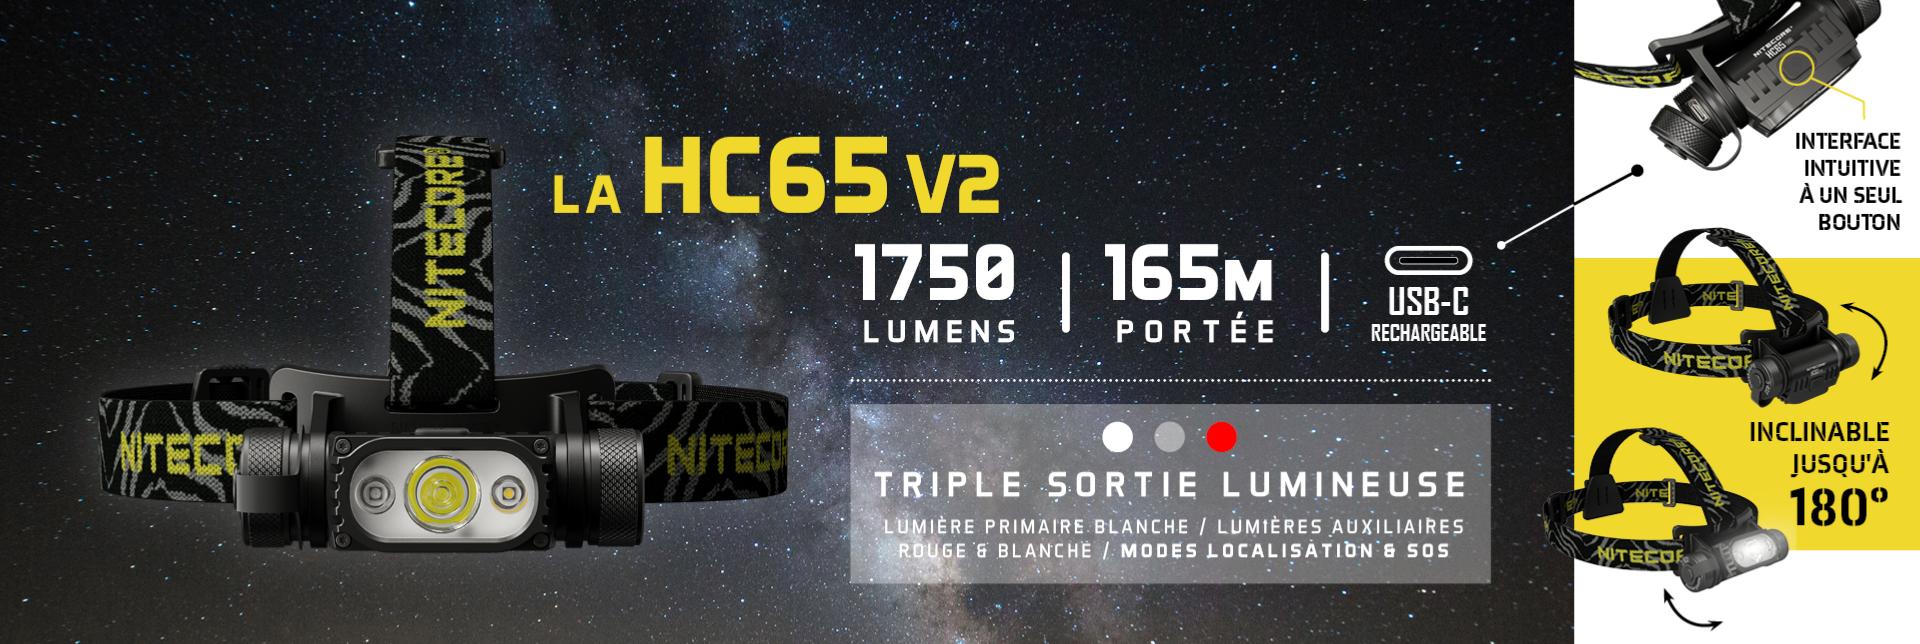 HC65V2